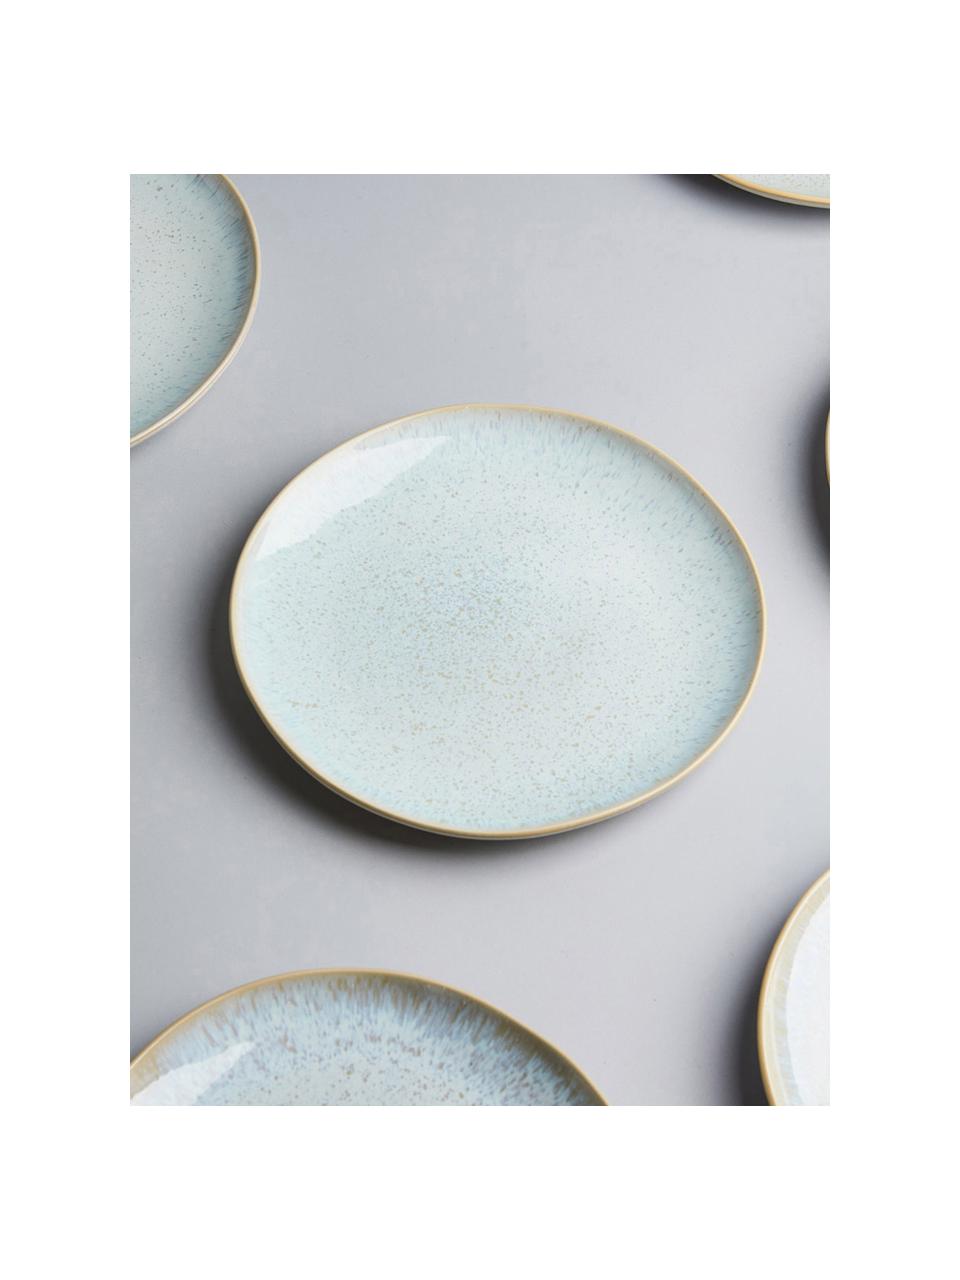 Handgeschilderde ontbijtborden Areia met reactief glazuur, 2 stuks, Keramiek, Lichtblauw, gebroken wit, lichtbeige, Ø 22 cm